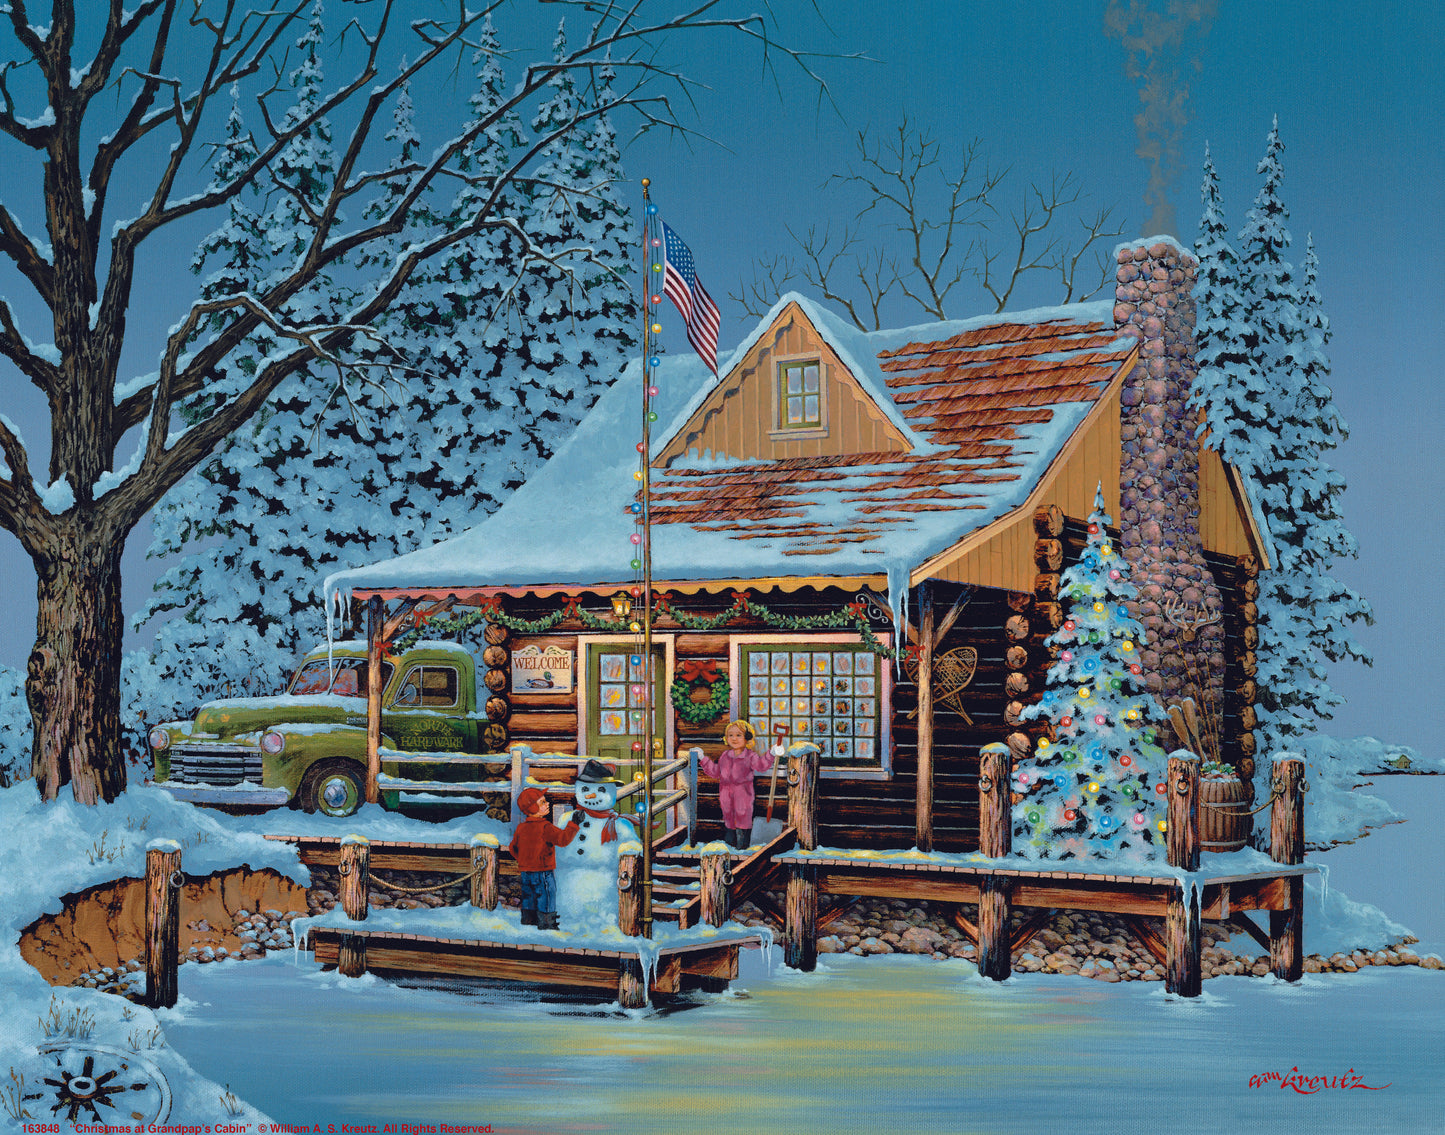 163848_11x14_Christmas at Grandpap's Cabin_Art Print.jpg